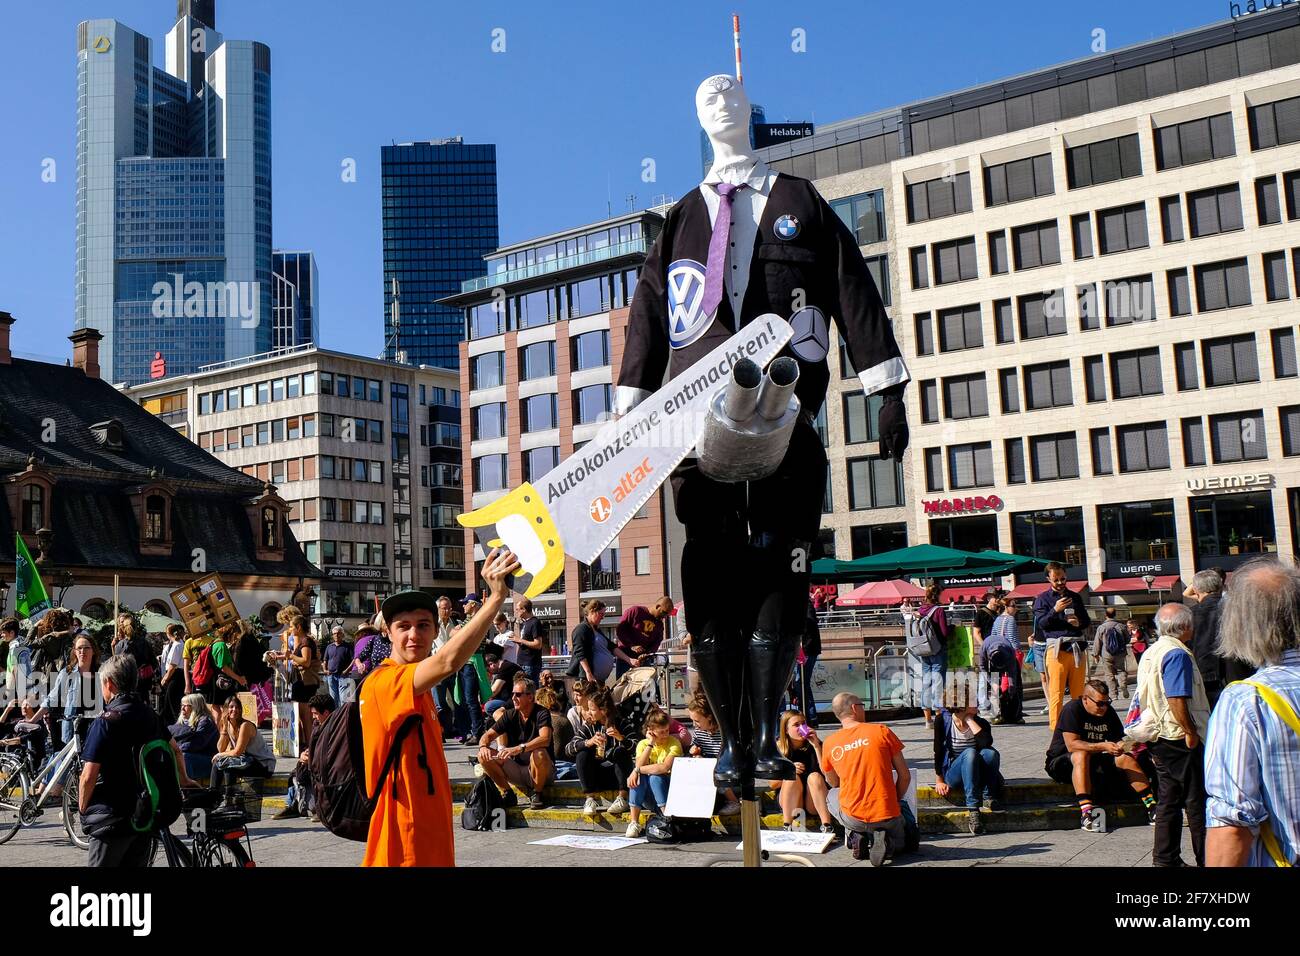 14.09.2019, Frankfurt am Main, Hessen, Deutschland - Auf dem Platz an der Hauptwache in Frankfurt versammeln sich Demonstranten und Aktivisten verschi Stock Photo